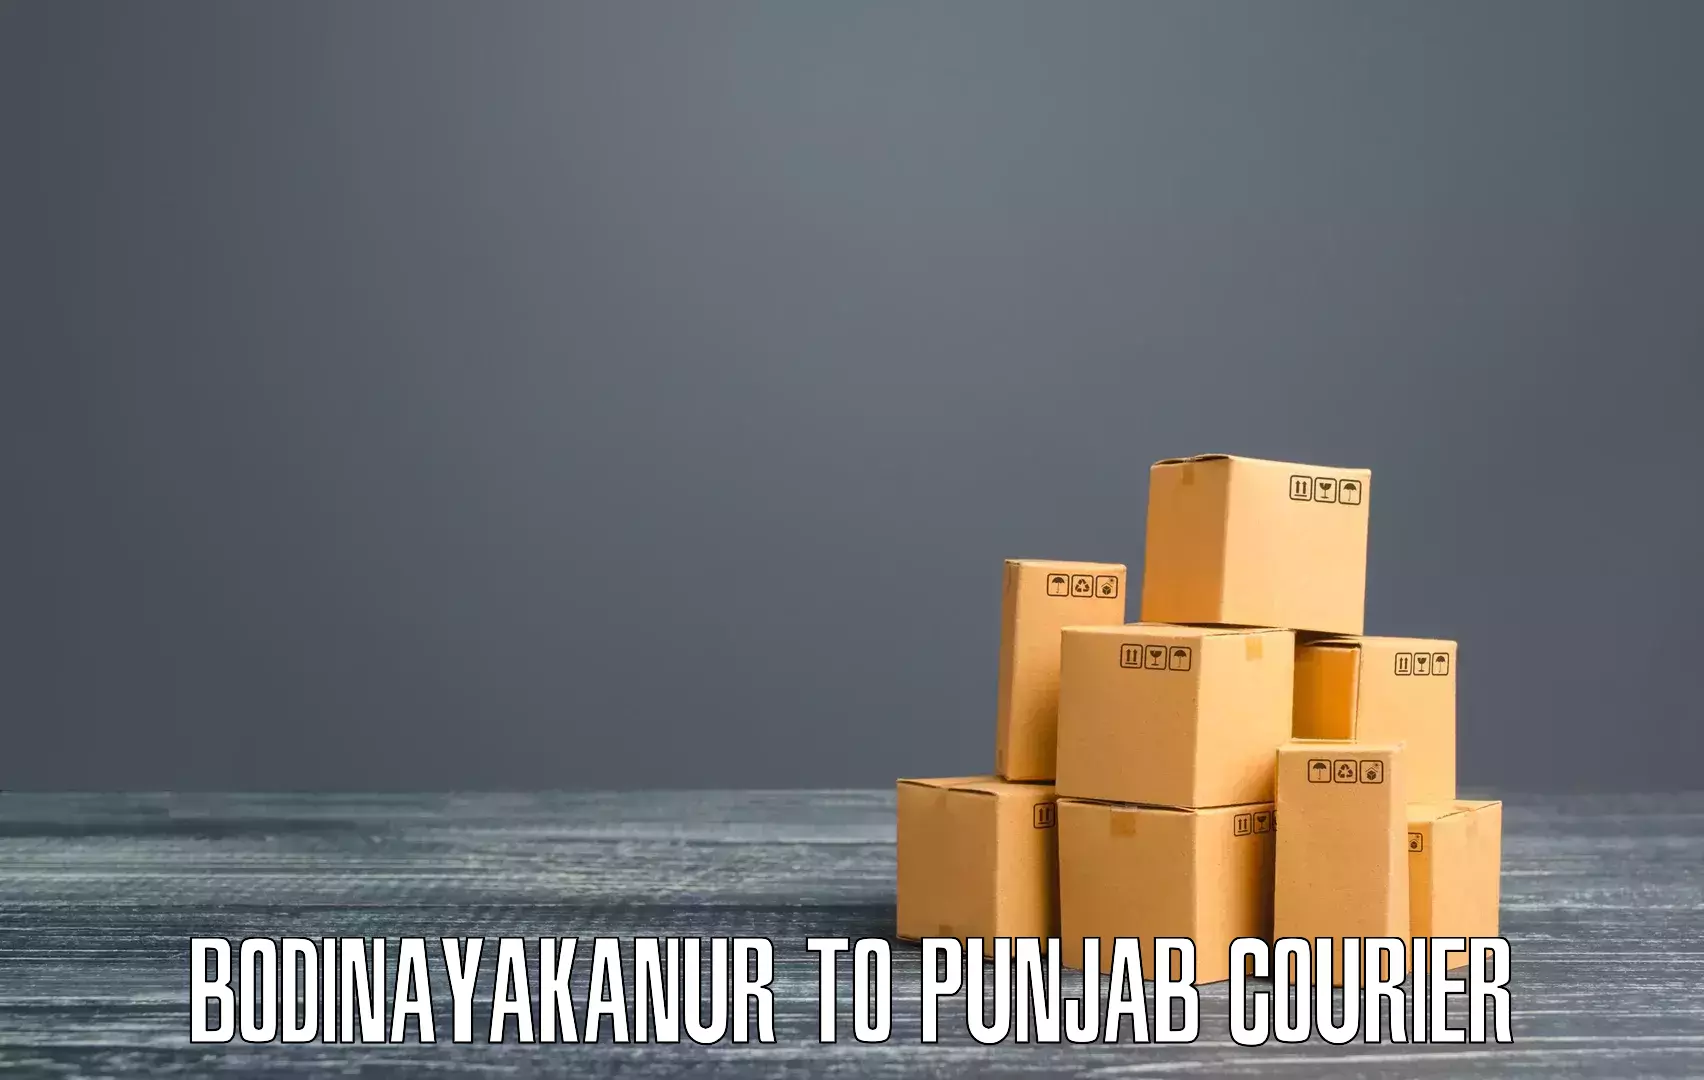 Multi-city courier Bodinayakanur to Punjab